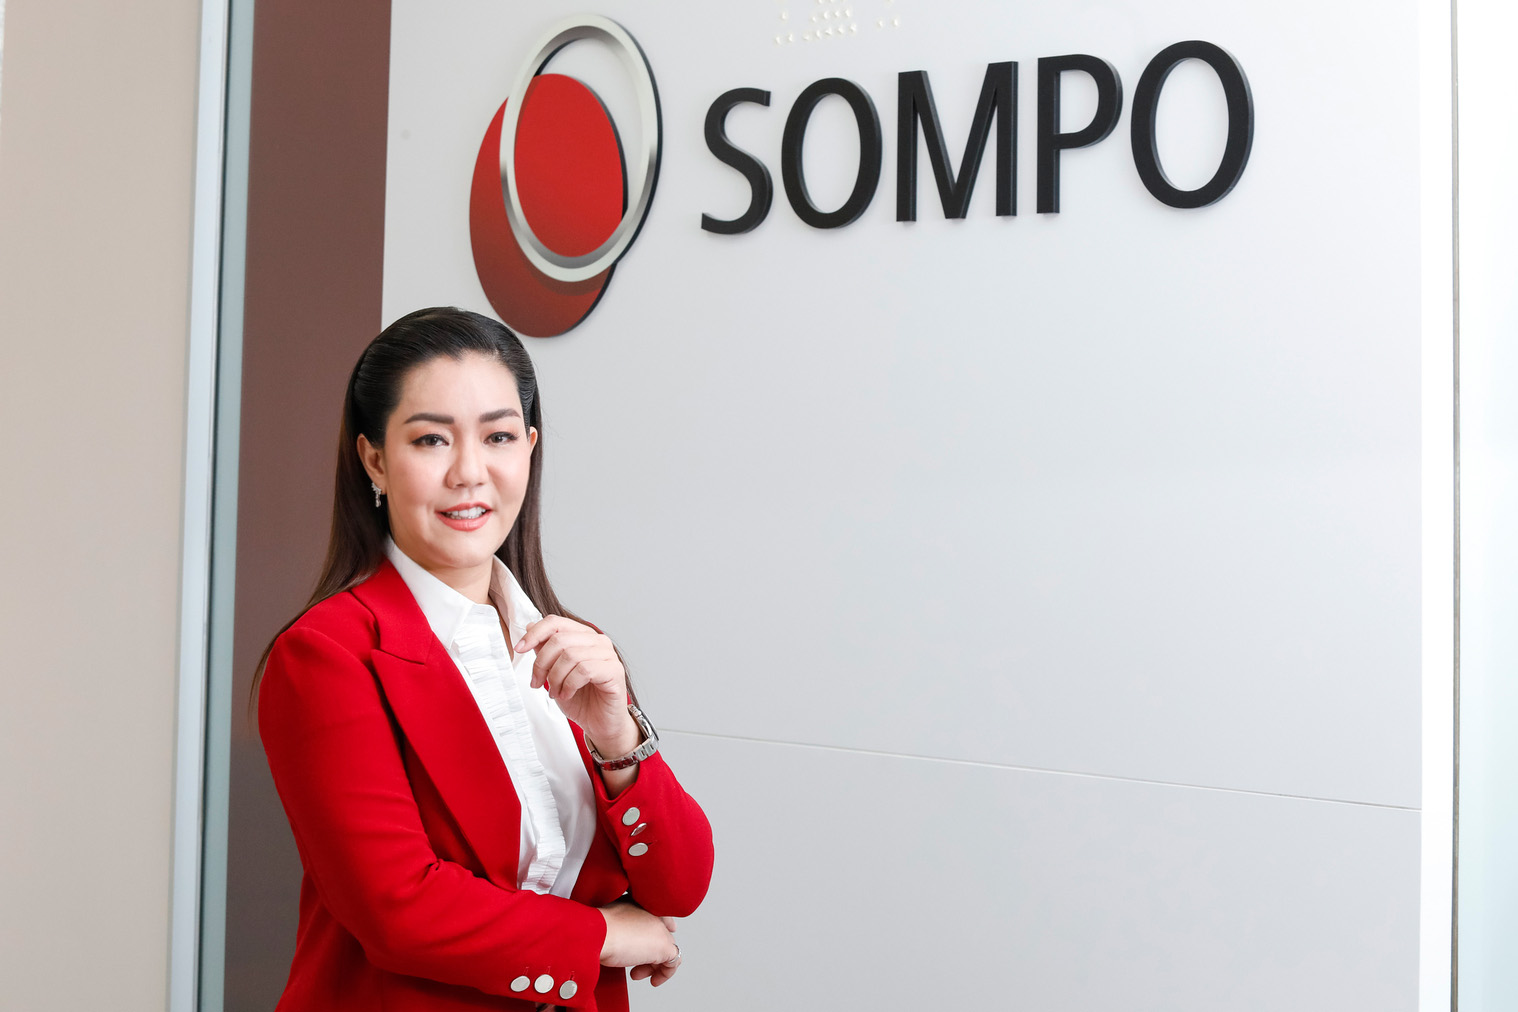 ซมโปะ ประกันภัย เปิดตัว “Sompo My Policy” เติมเต็มความสะดวกให้ลูกค้า ยกระดับบริการตรวจสอบข้อมูลกรมธรรม์ผ่าน LINE OA ตอกย้ำจุดยืน “Digital Insure”